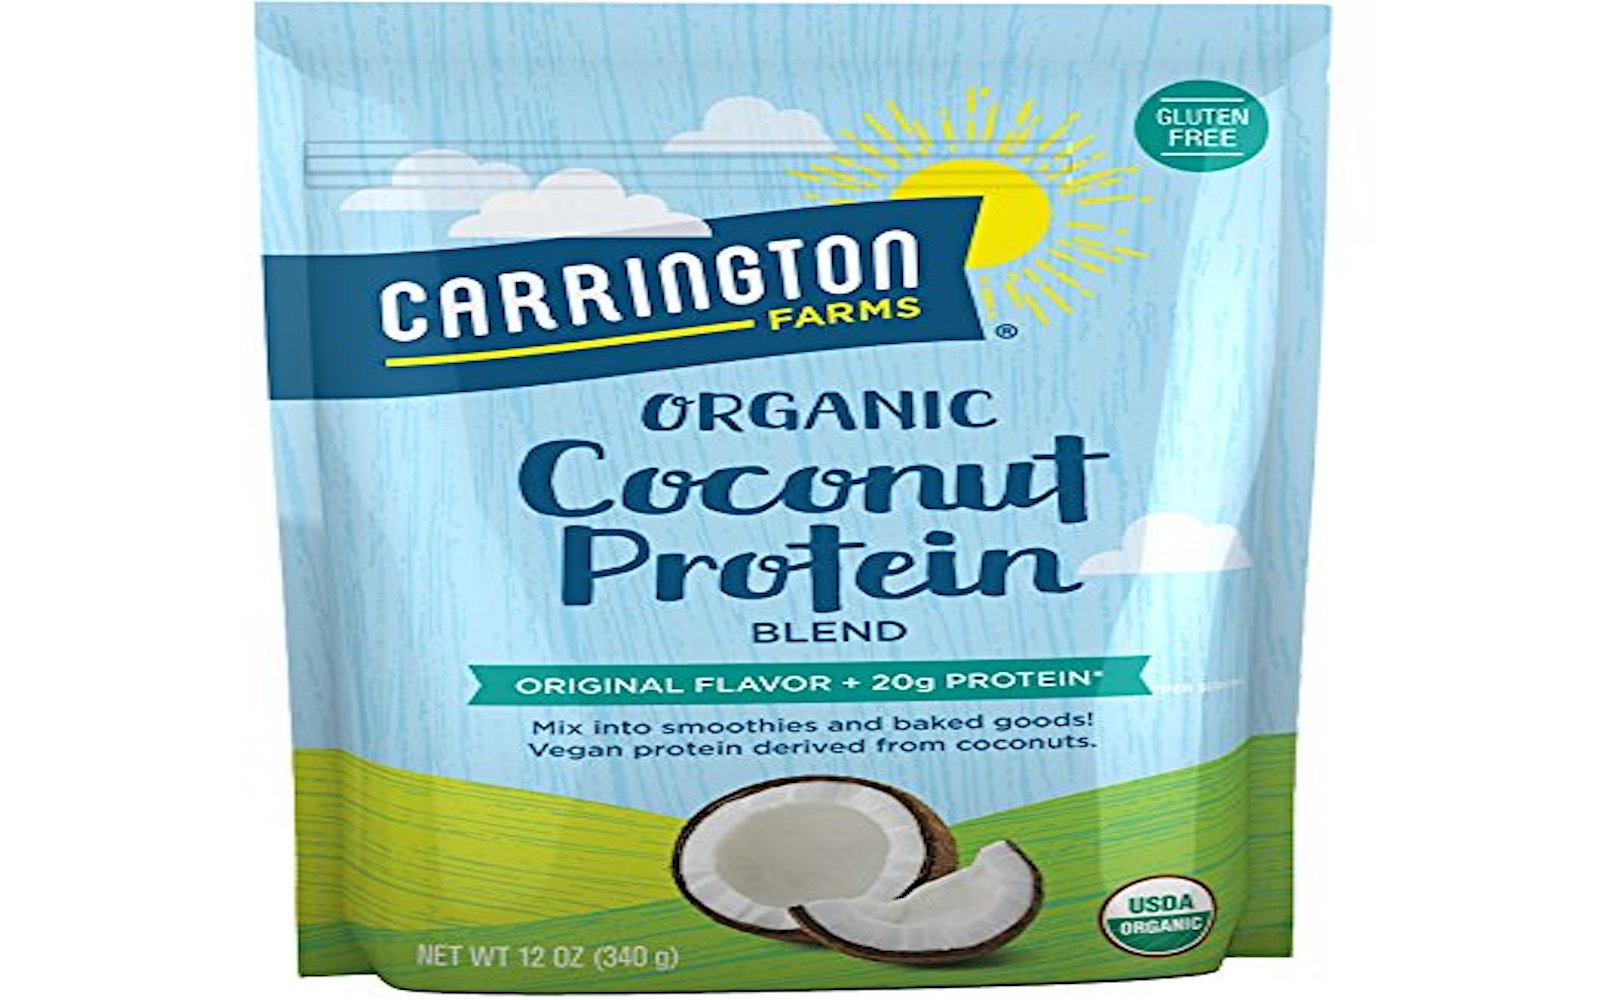 Carrington Farms Organic Coconut Protein